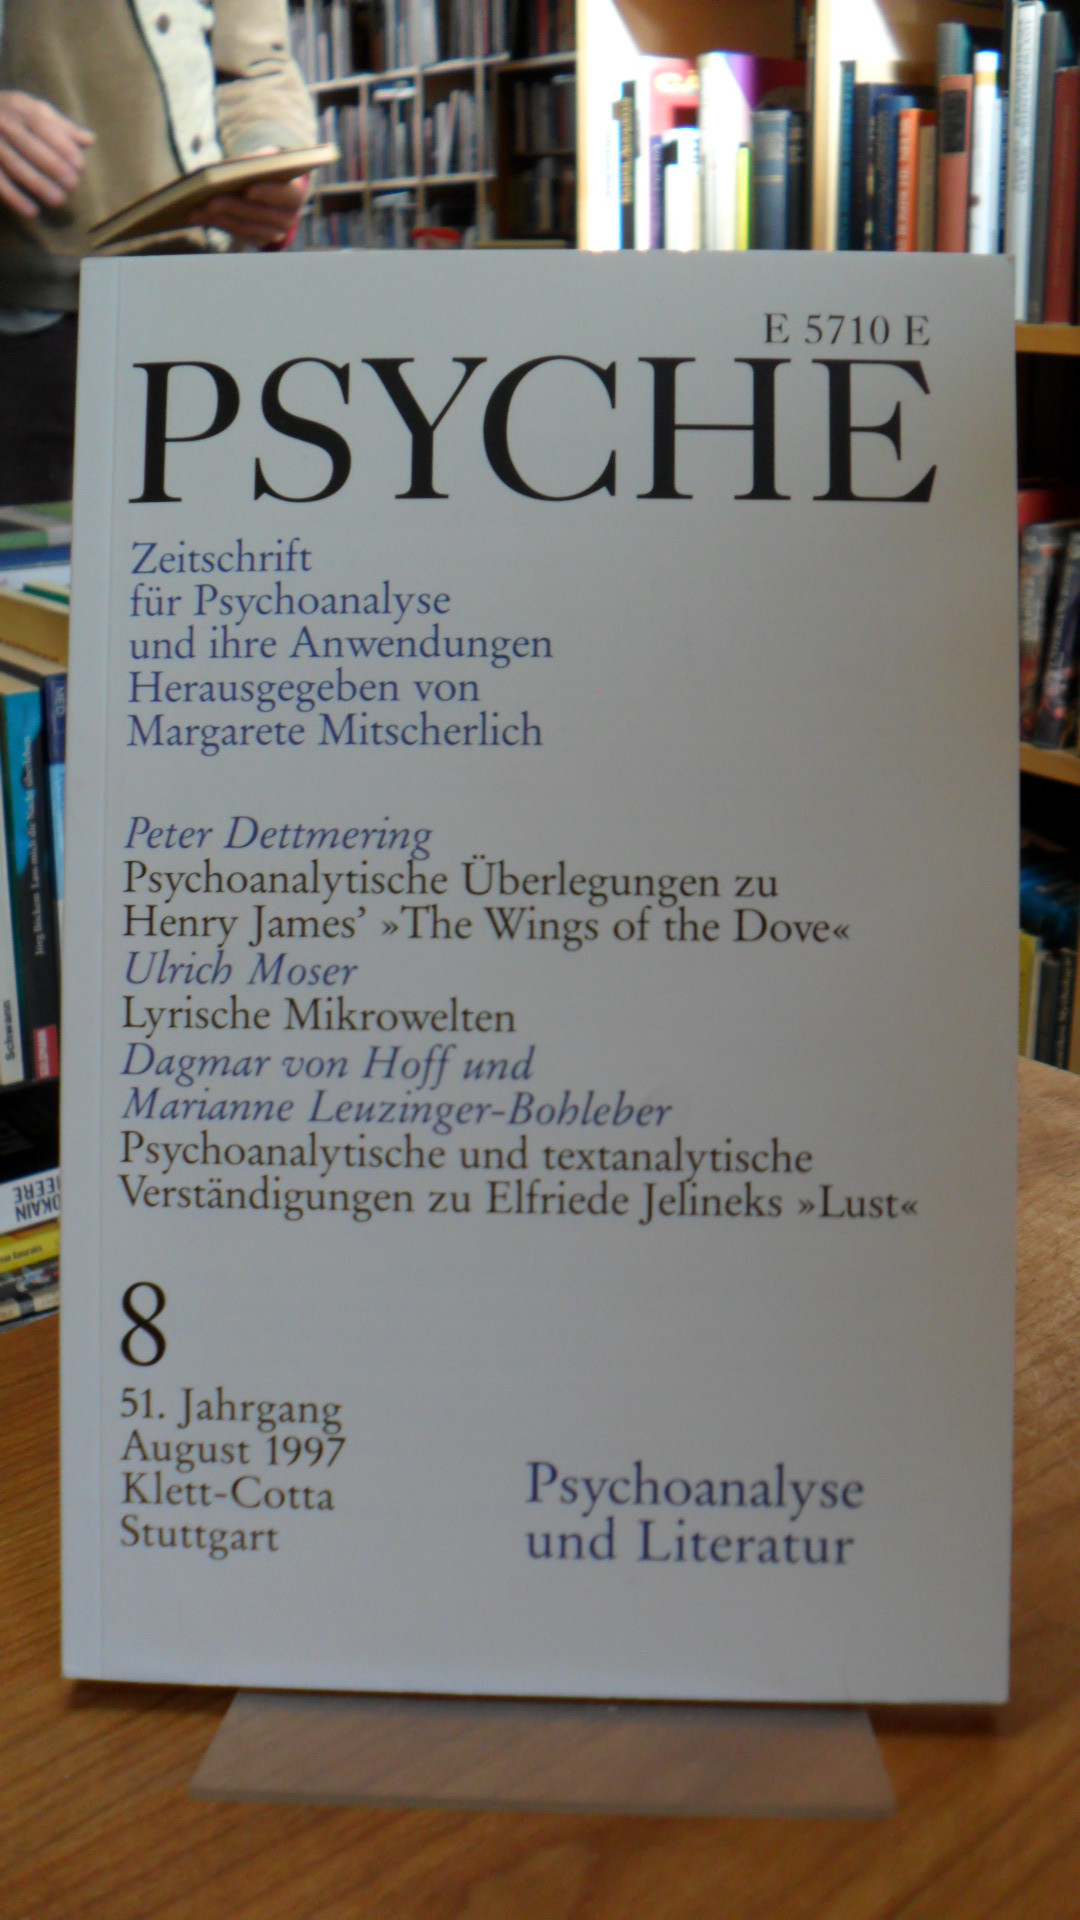 Mitscherlich, Psyche – Zeitschrift für Psychoanalyse und ihre Anwendungen, Heft